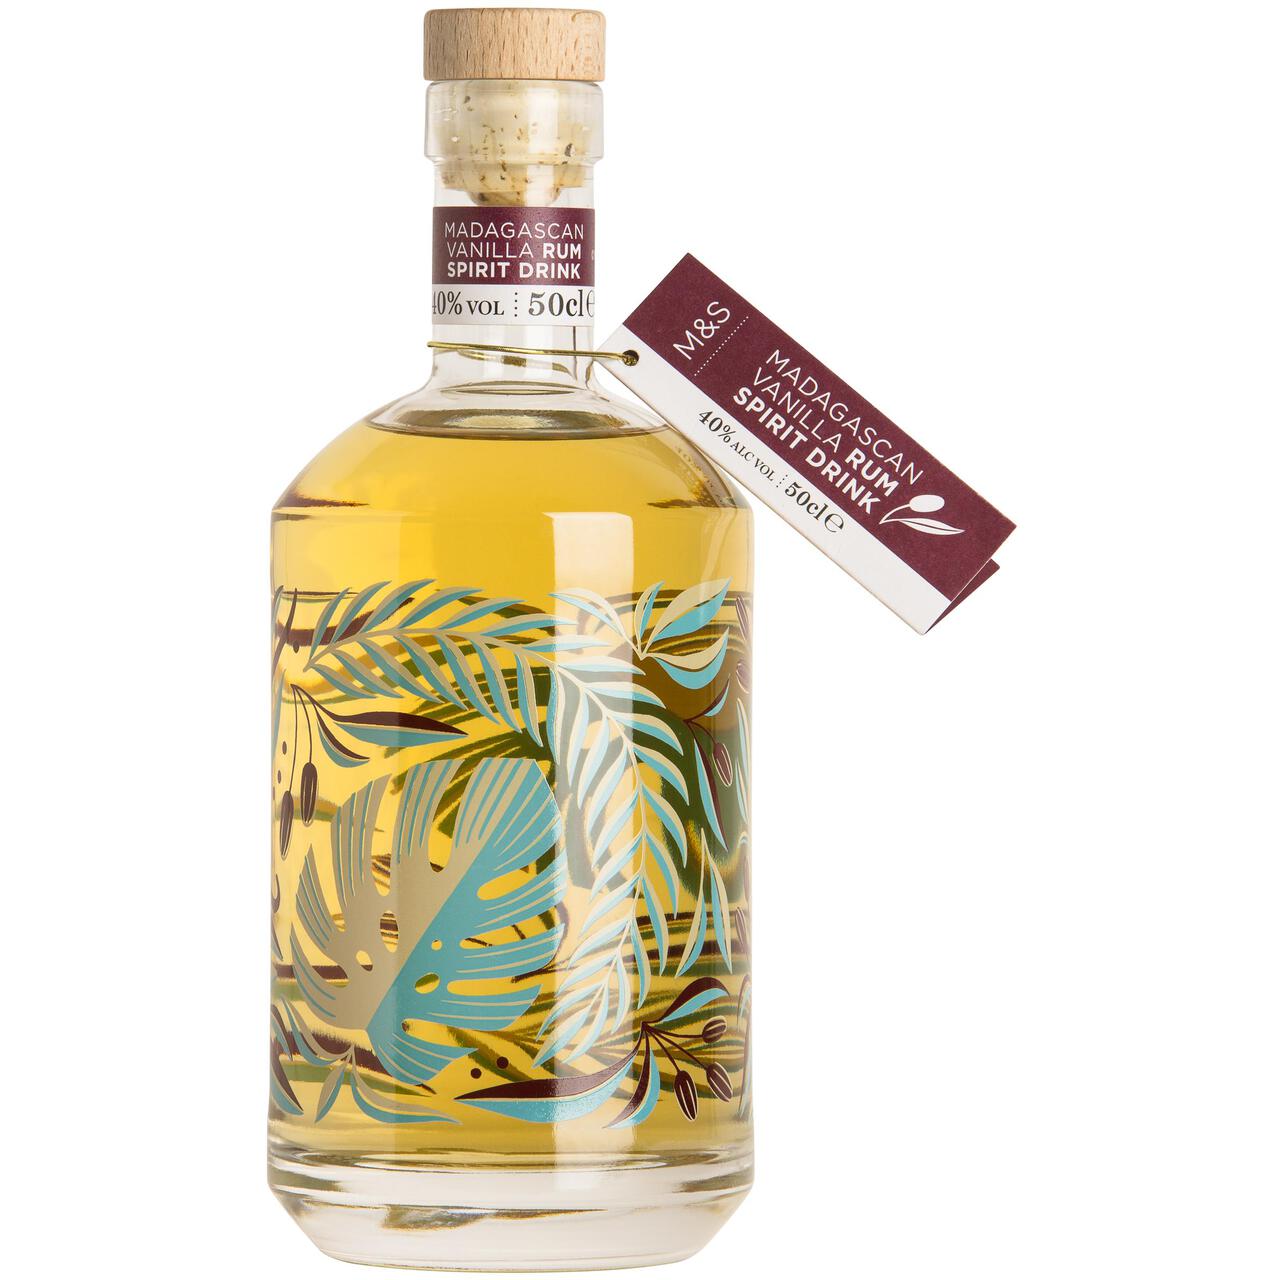 M&S Madagascan Vanilla Rum 50cl